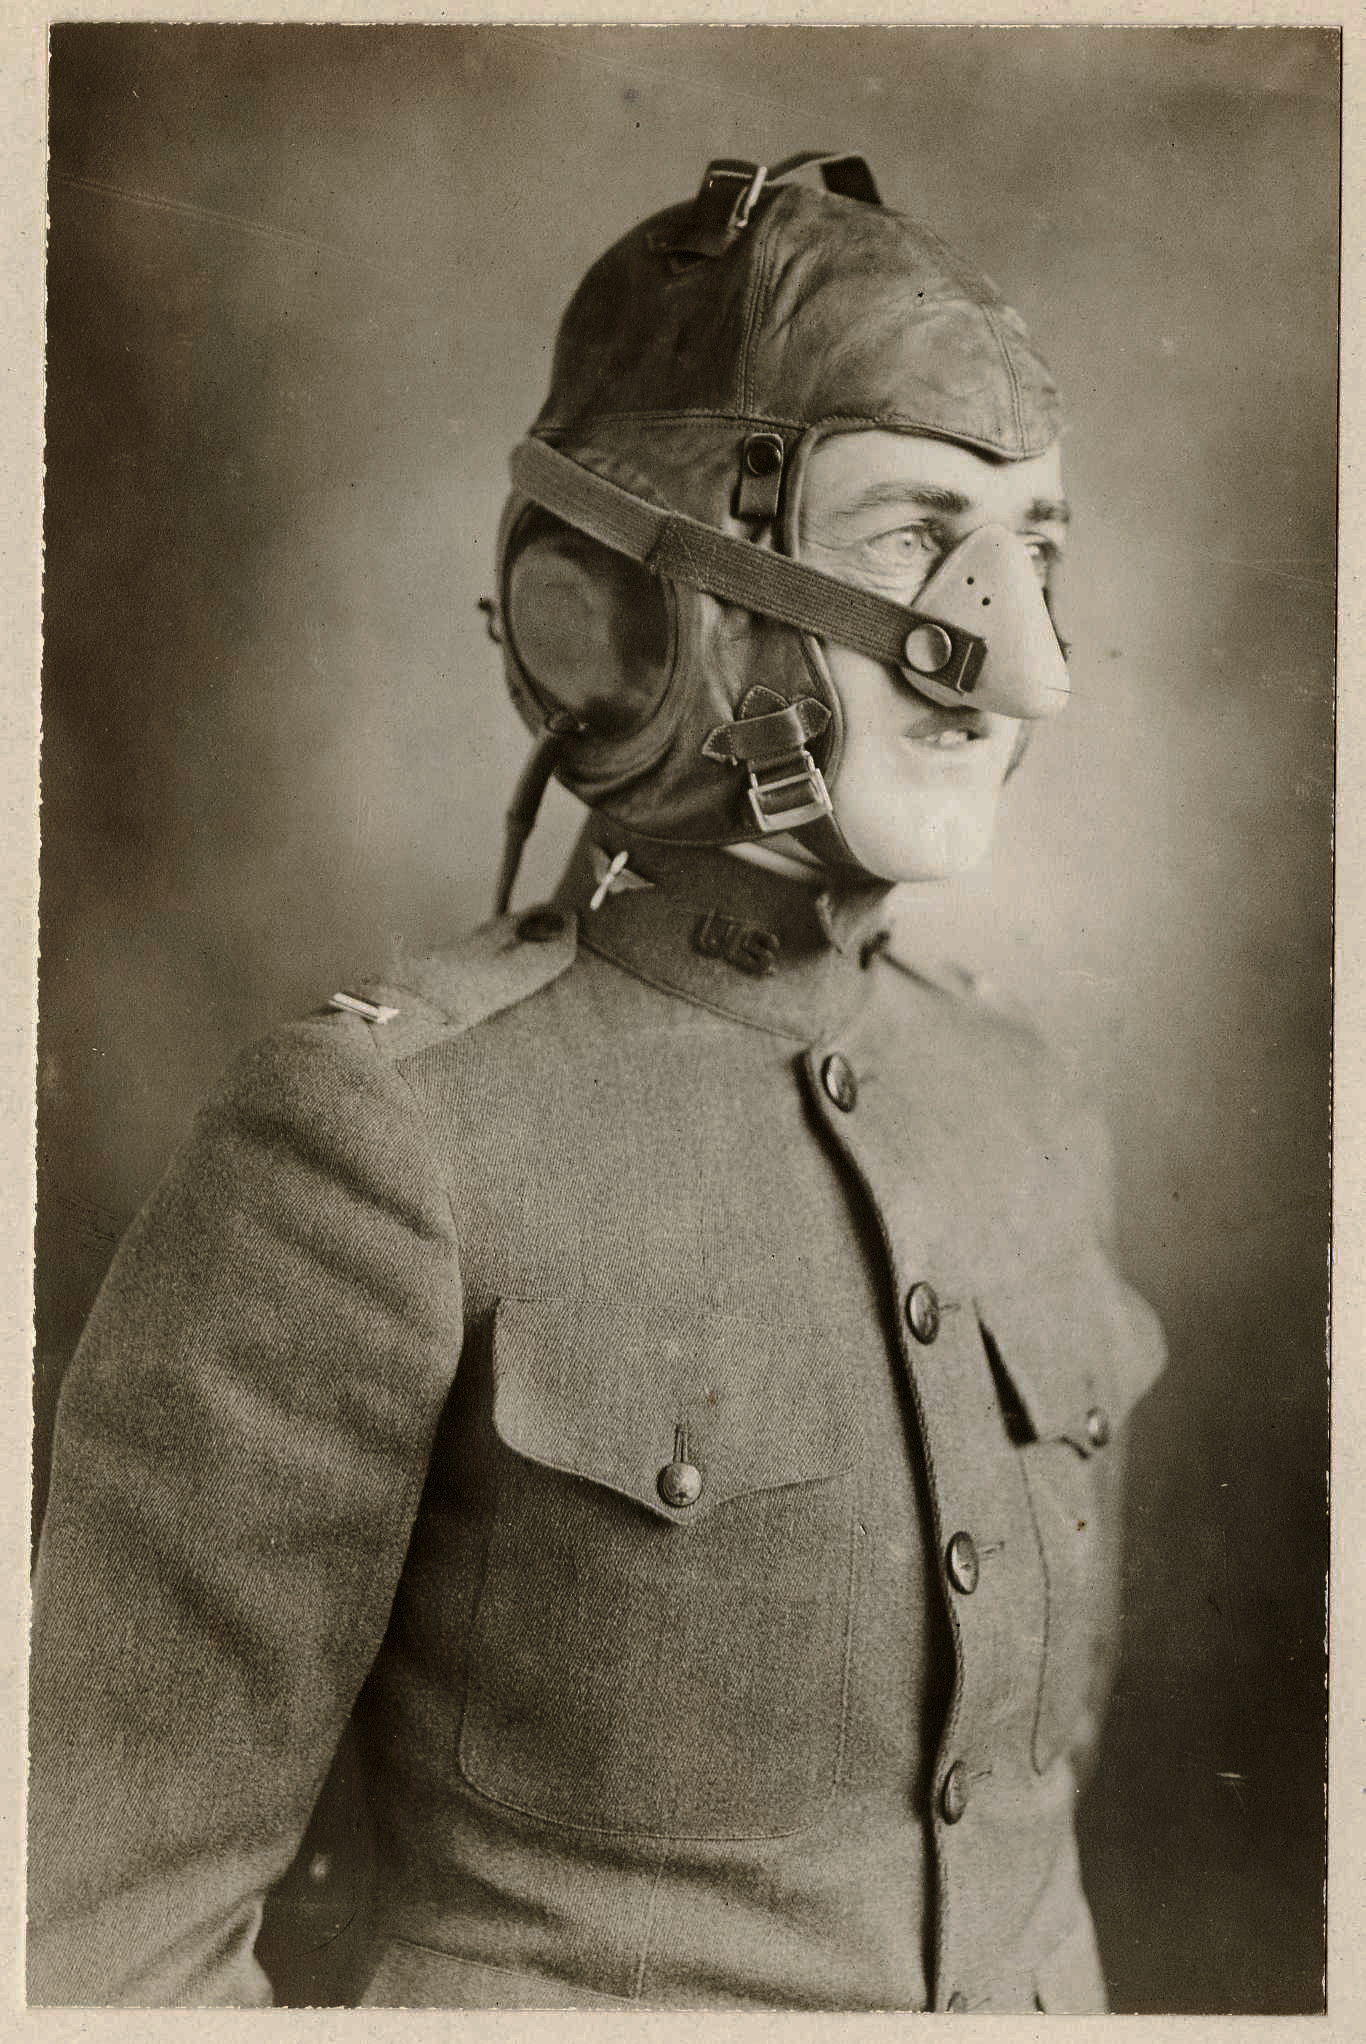 Un masque d’oxygène pour aviateur de la Première Guerre Mondiale